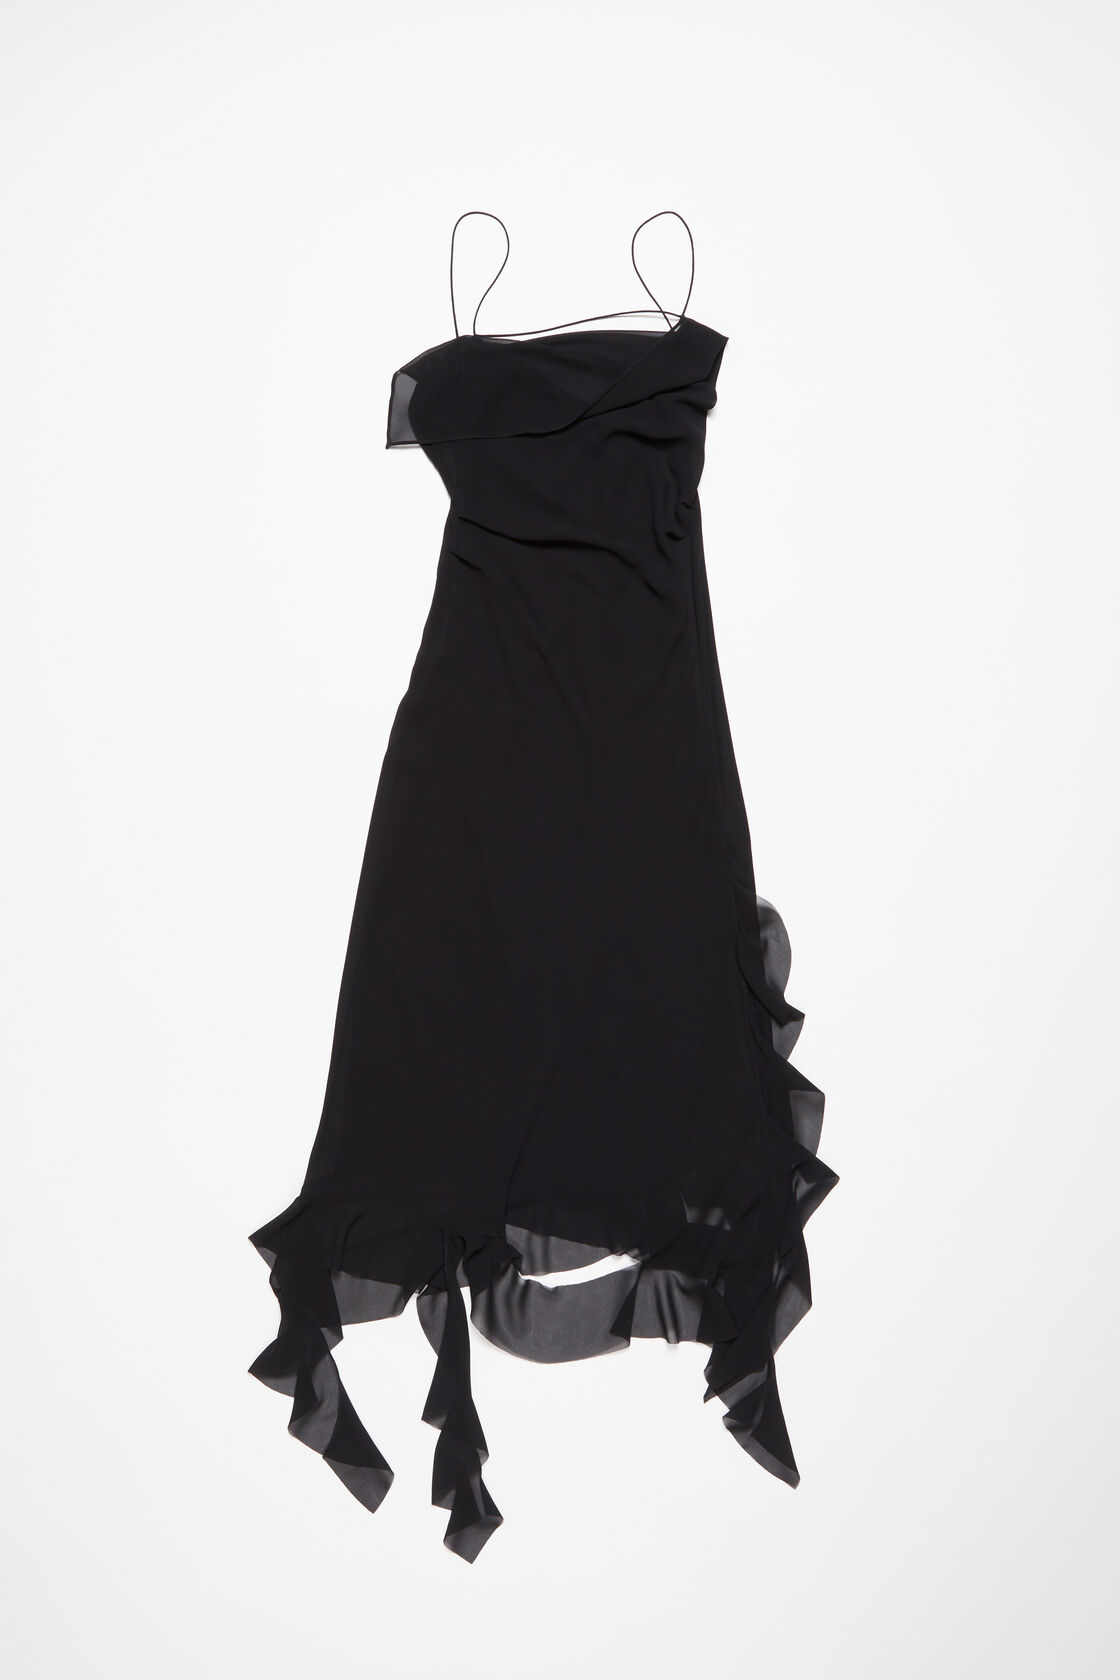 Acne Studios Ruffles Strap Dress In Black